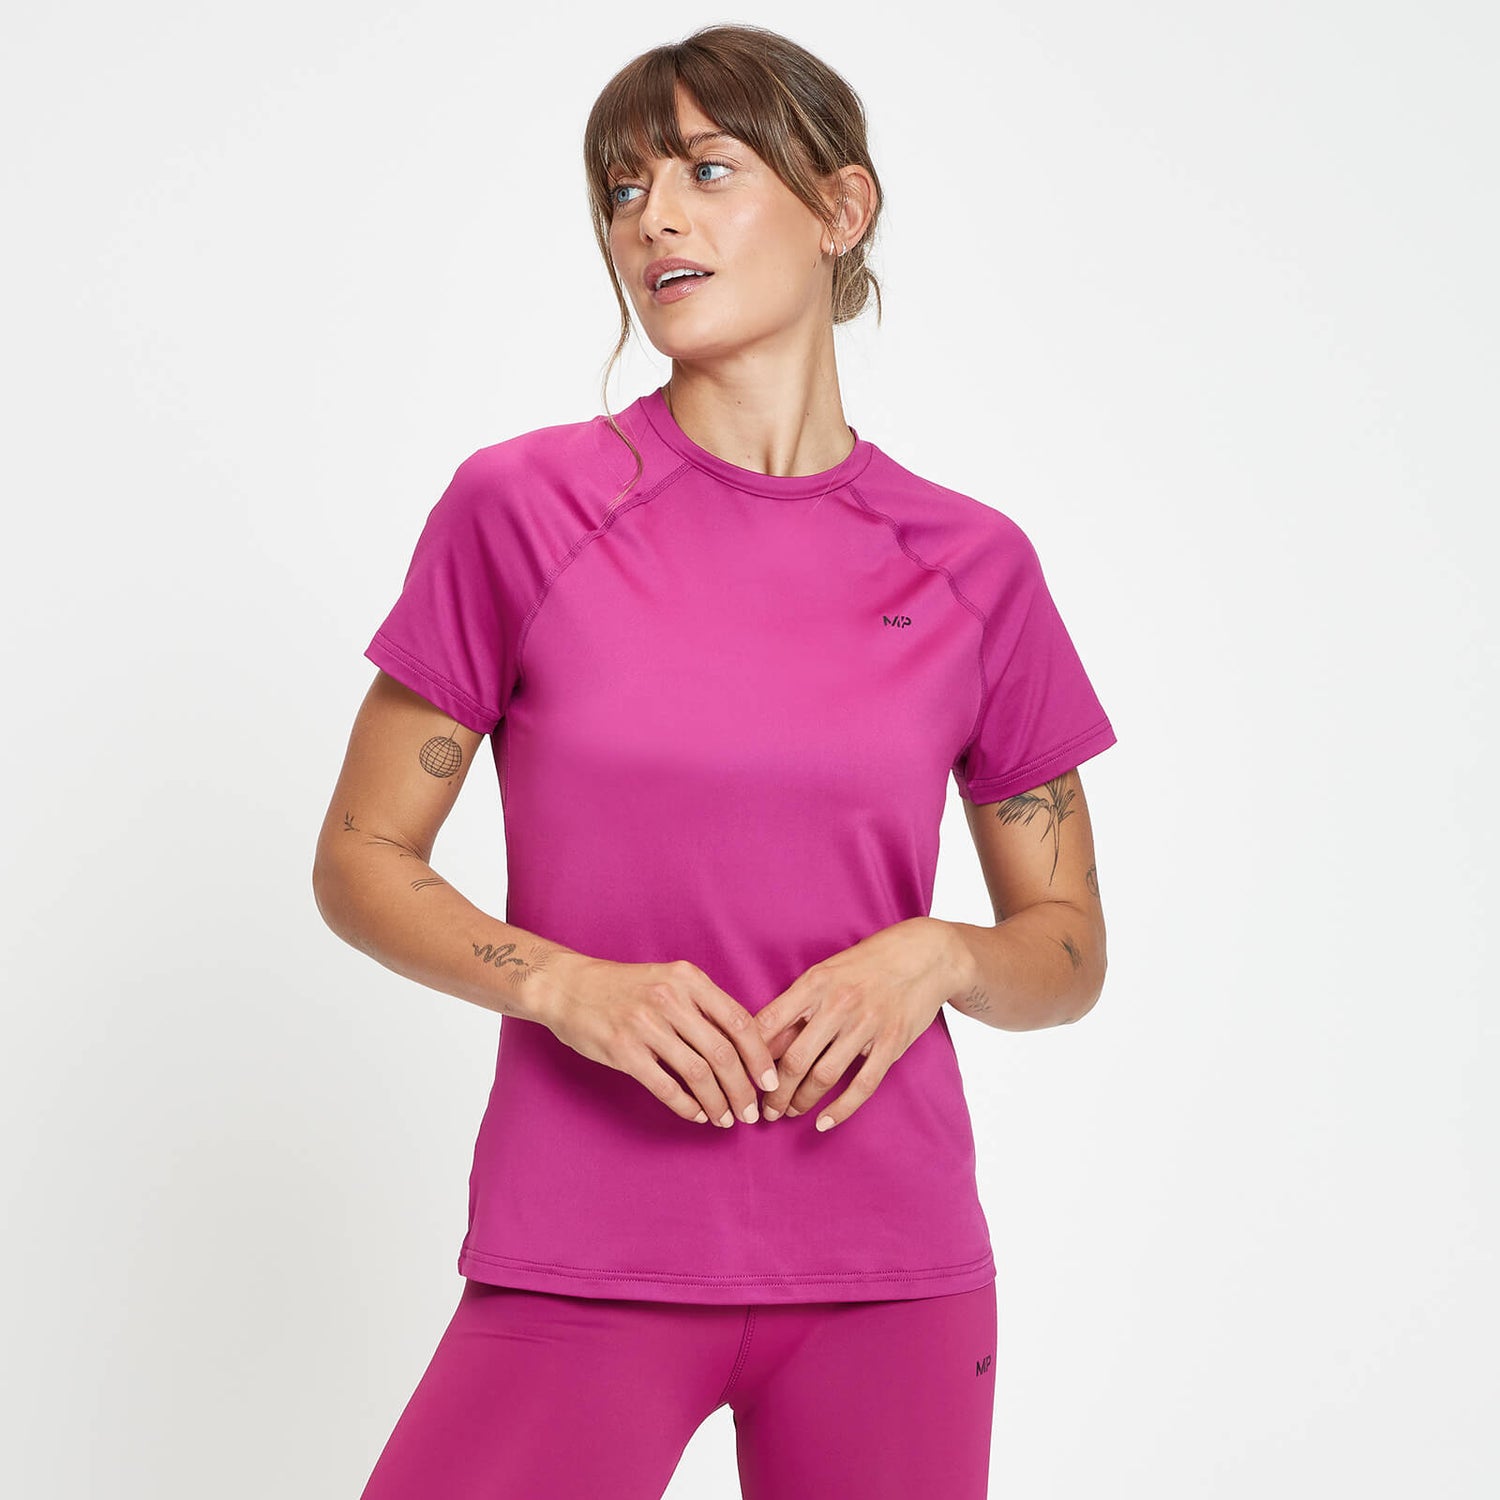 Γυναικείο Μπλουζάκι Προπόνησης MP Repeat - Βαθύ ροζ